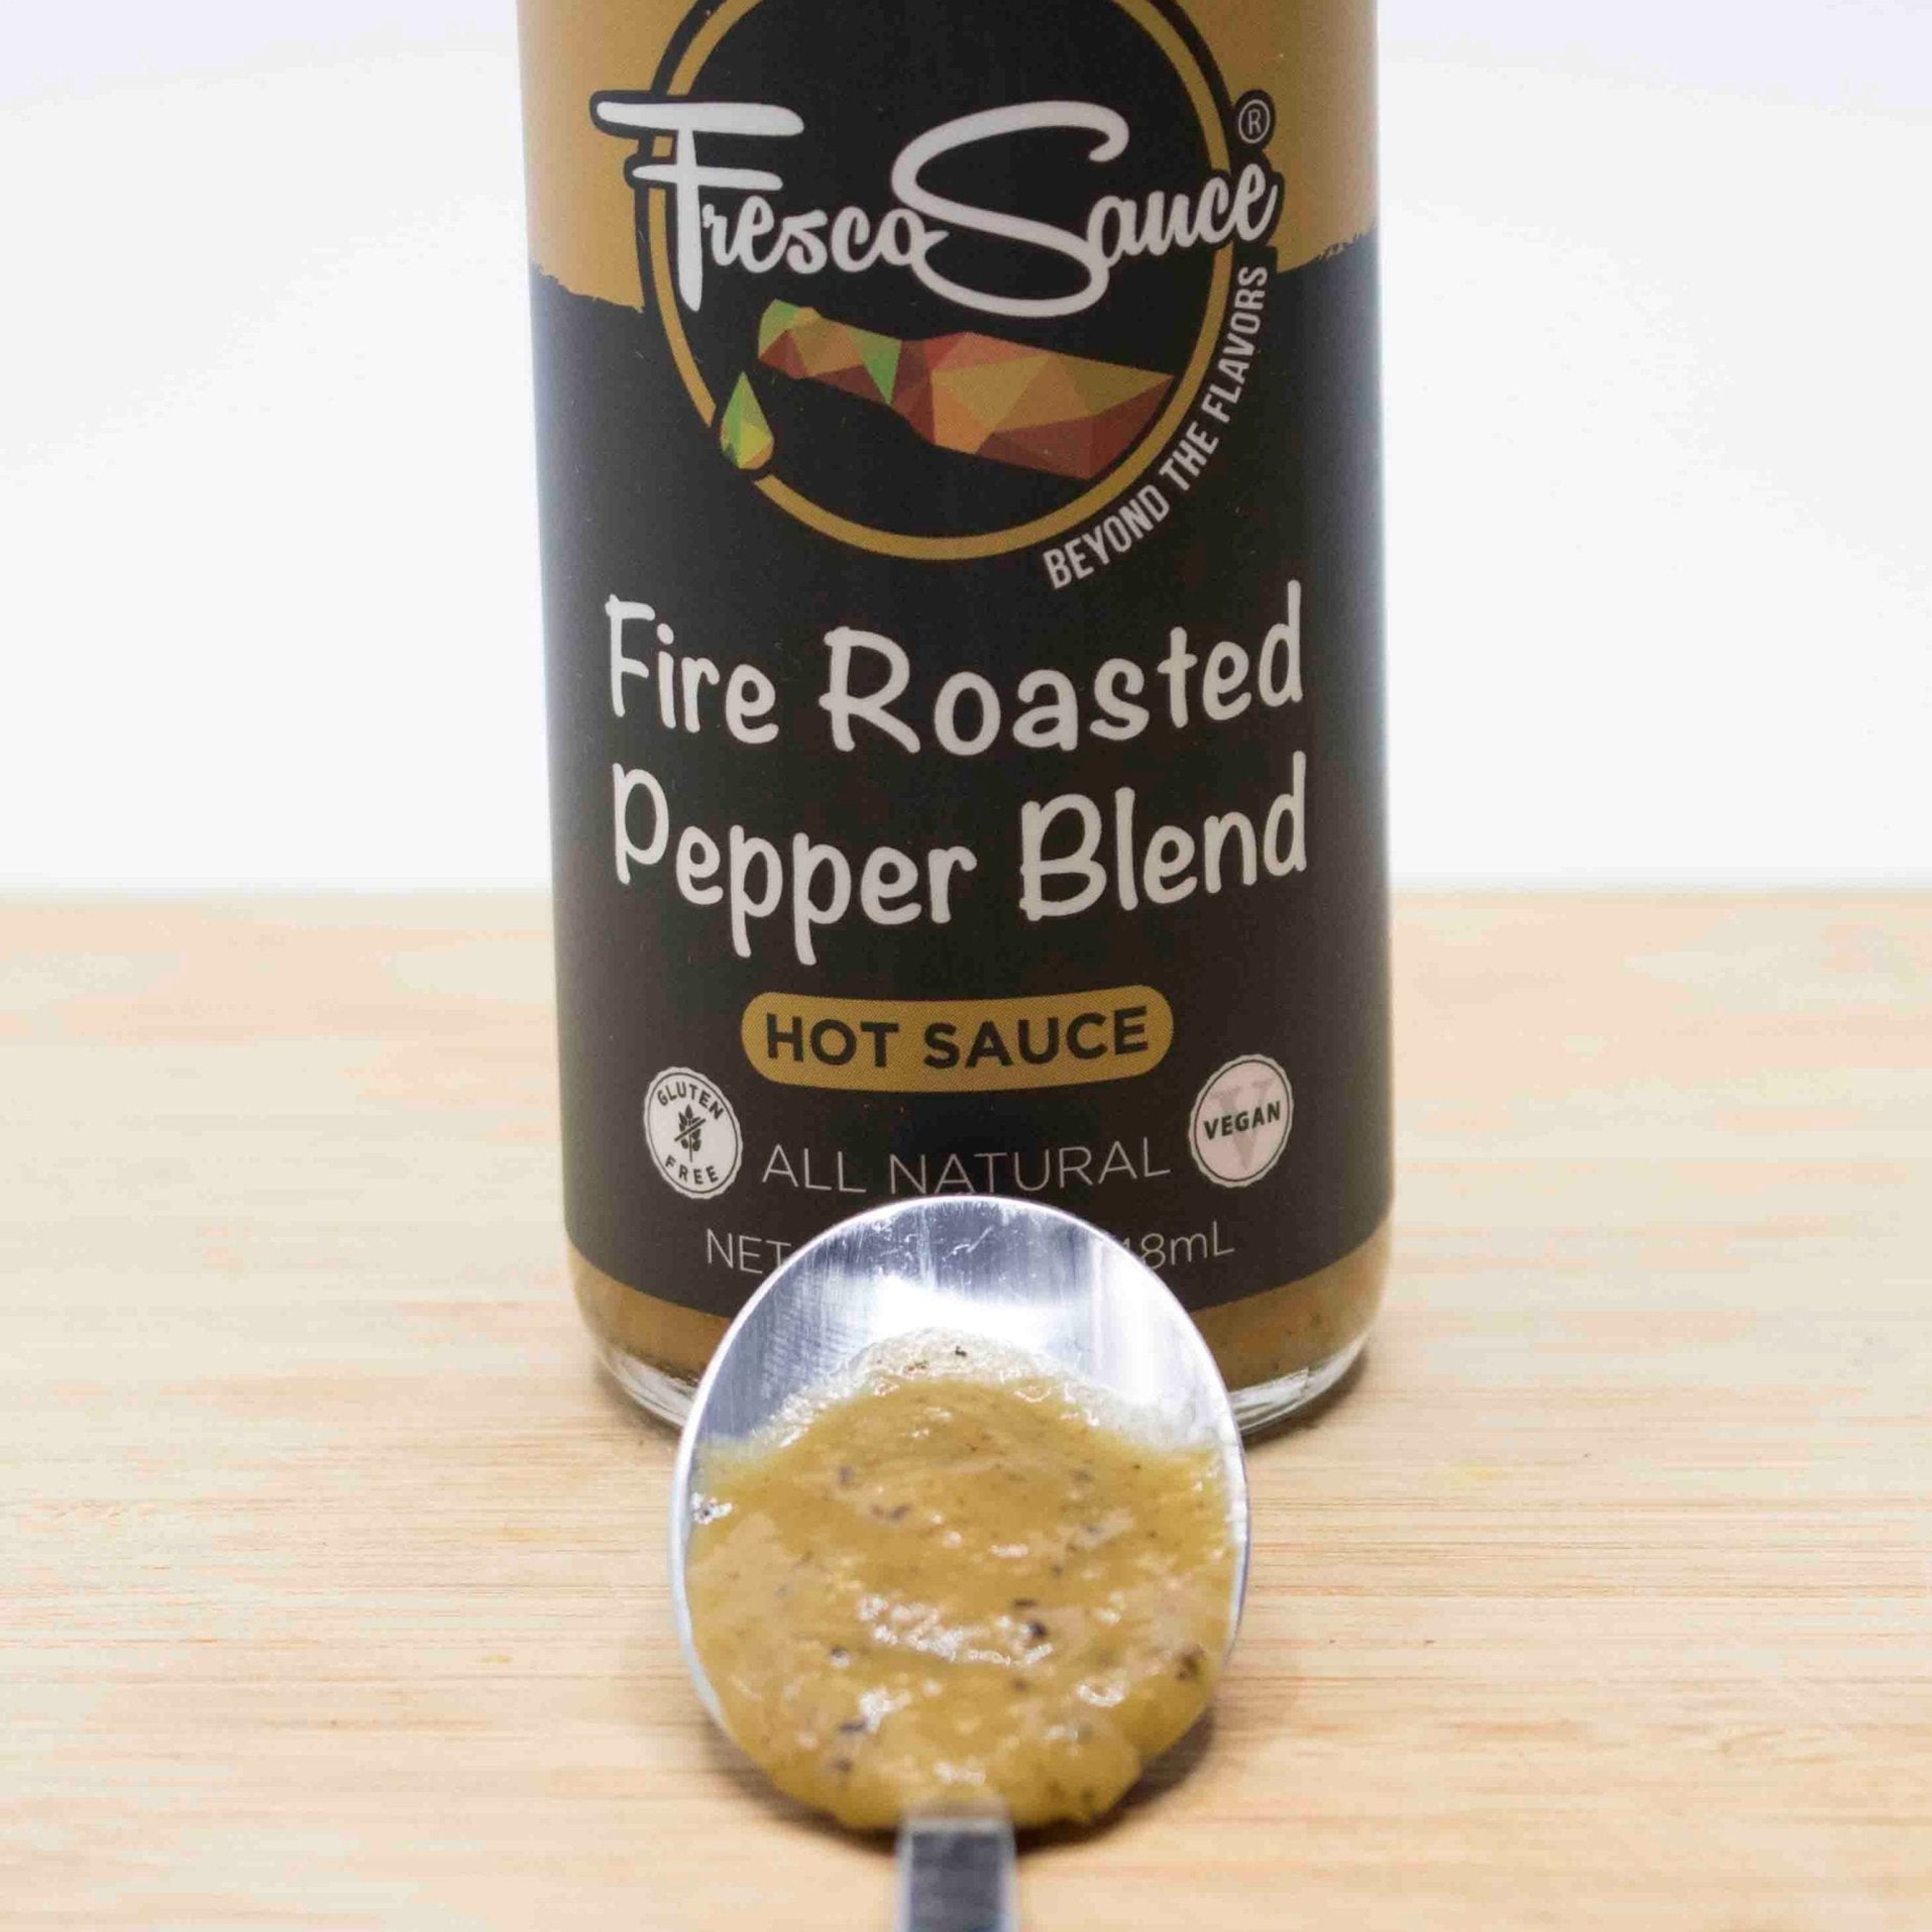 Fire Roasted Pepper Blend Hot Sauce